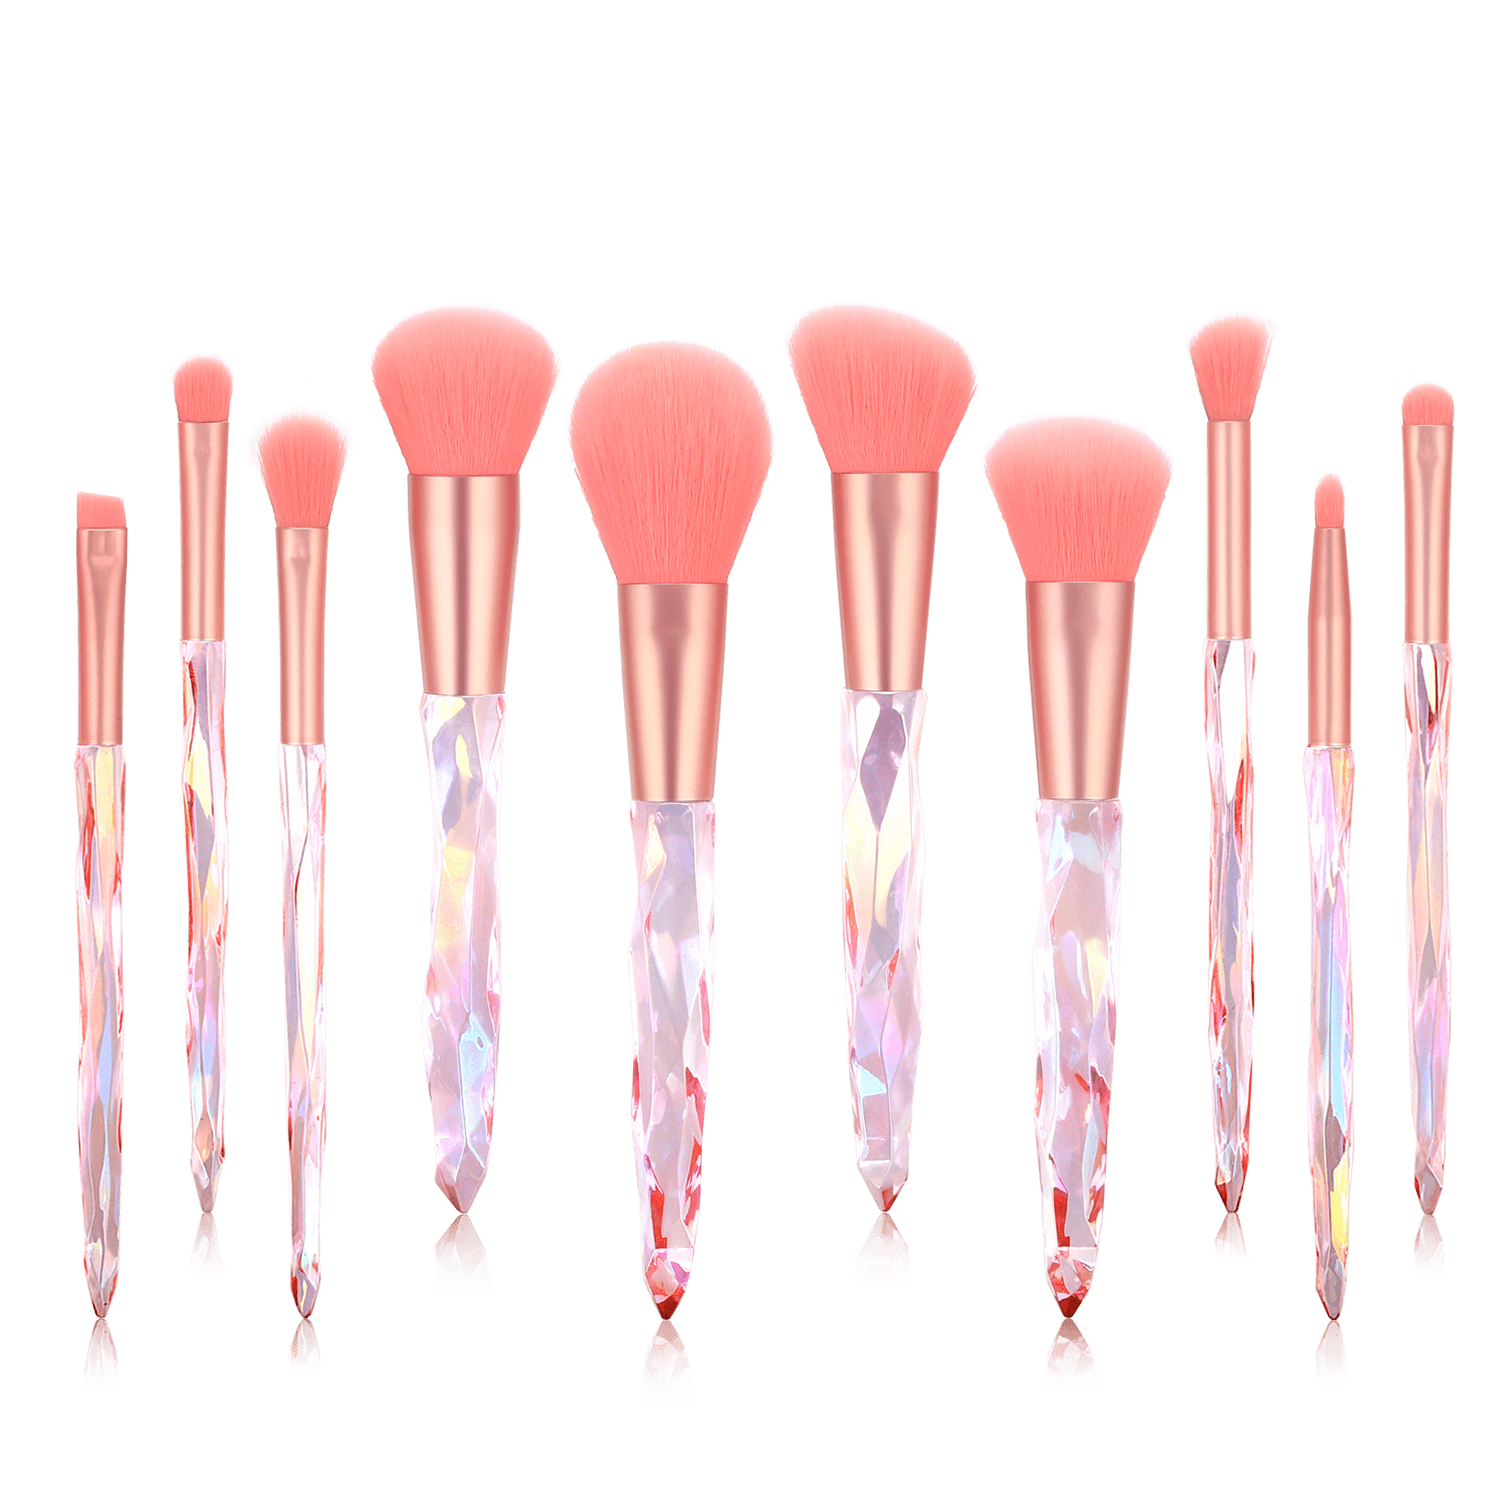 Bsroluna 10 Pcs Crystal Pink Makeup Brushes Set Ideal Make Up Brushes